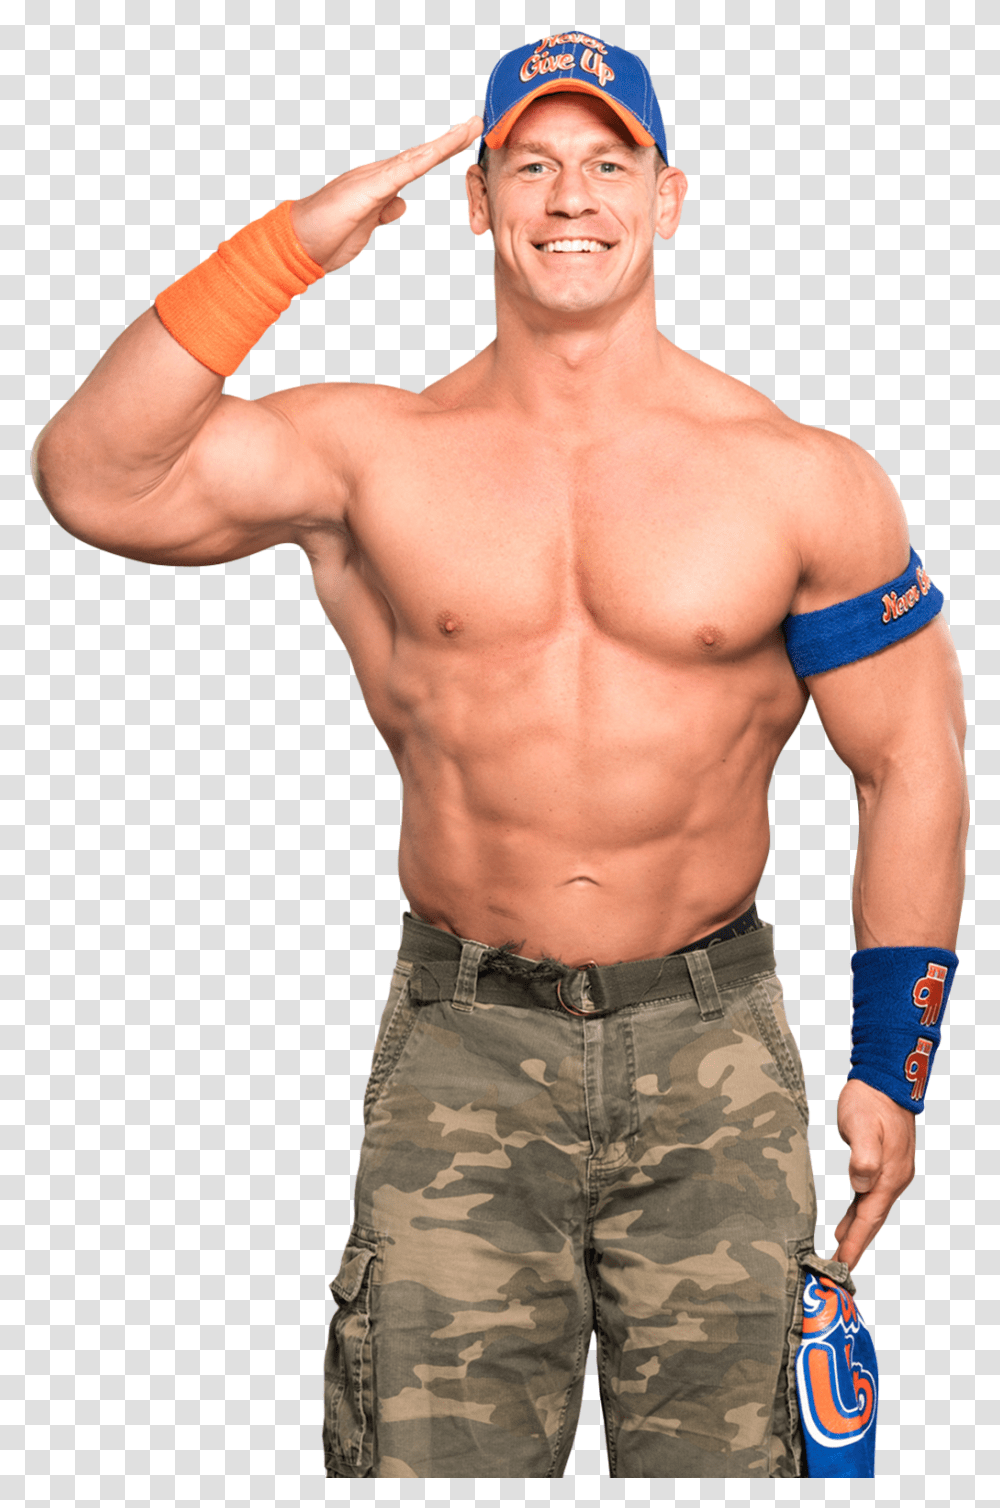 John Cena Full Hd, Person, Human, Arm, Torso Transparent Png